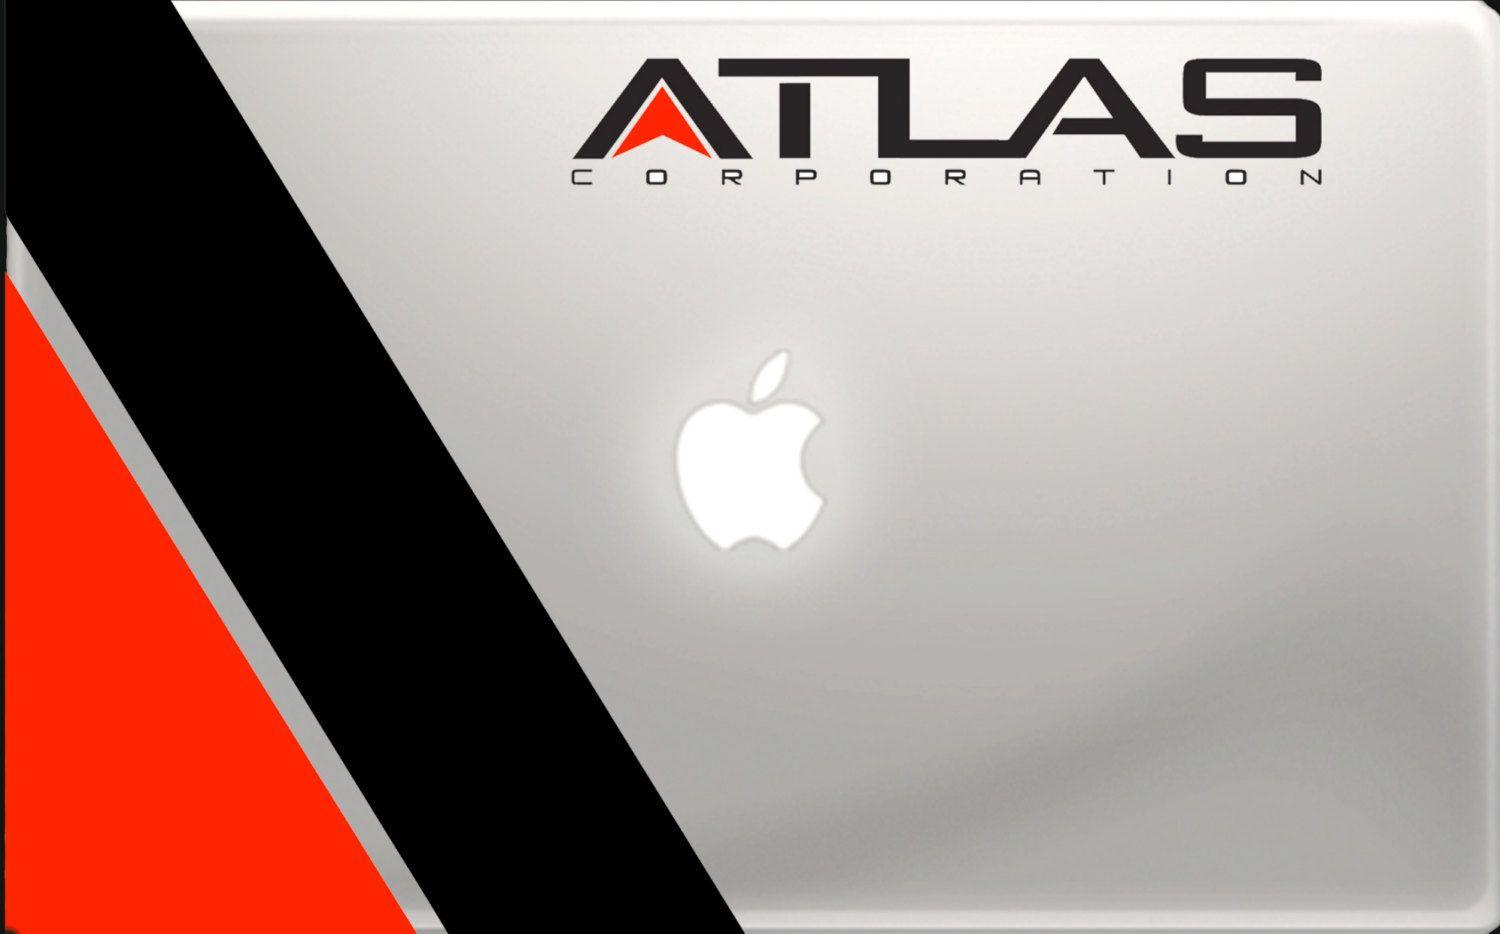 Atlas ideas. call of duty, advanced warfare, atlas